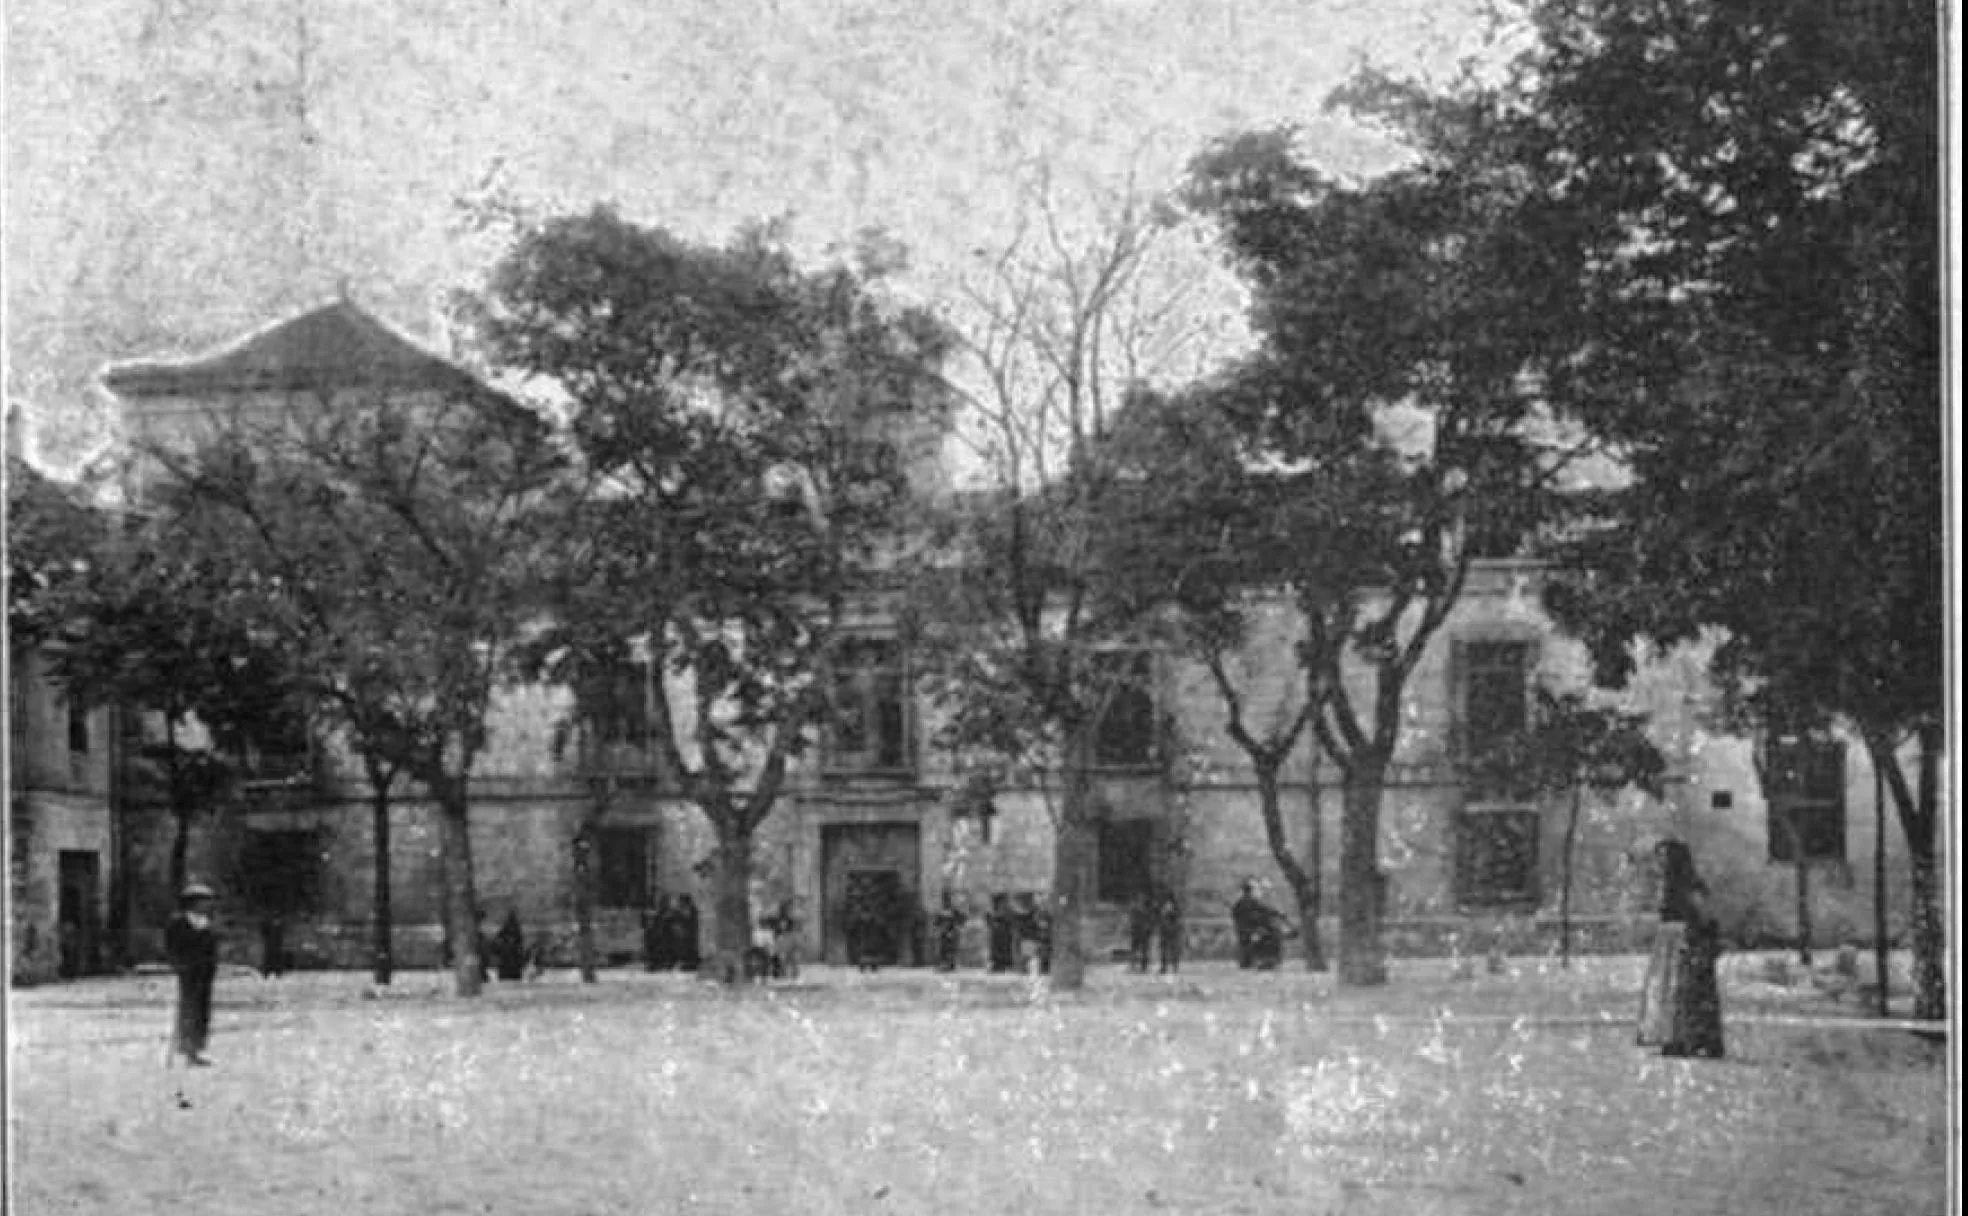 La vieja cárcel de Chancillería, en Valladolid, donde fueron detenidos y confinados los sopechosos.